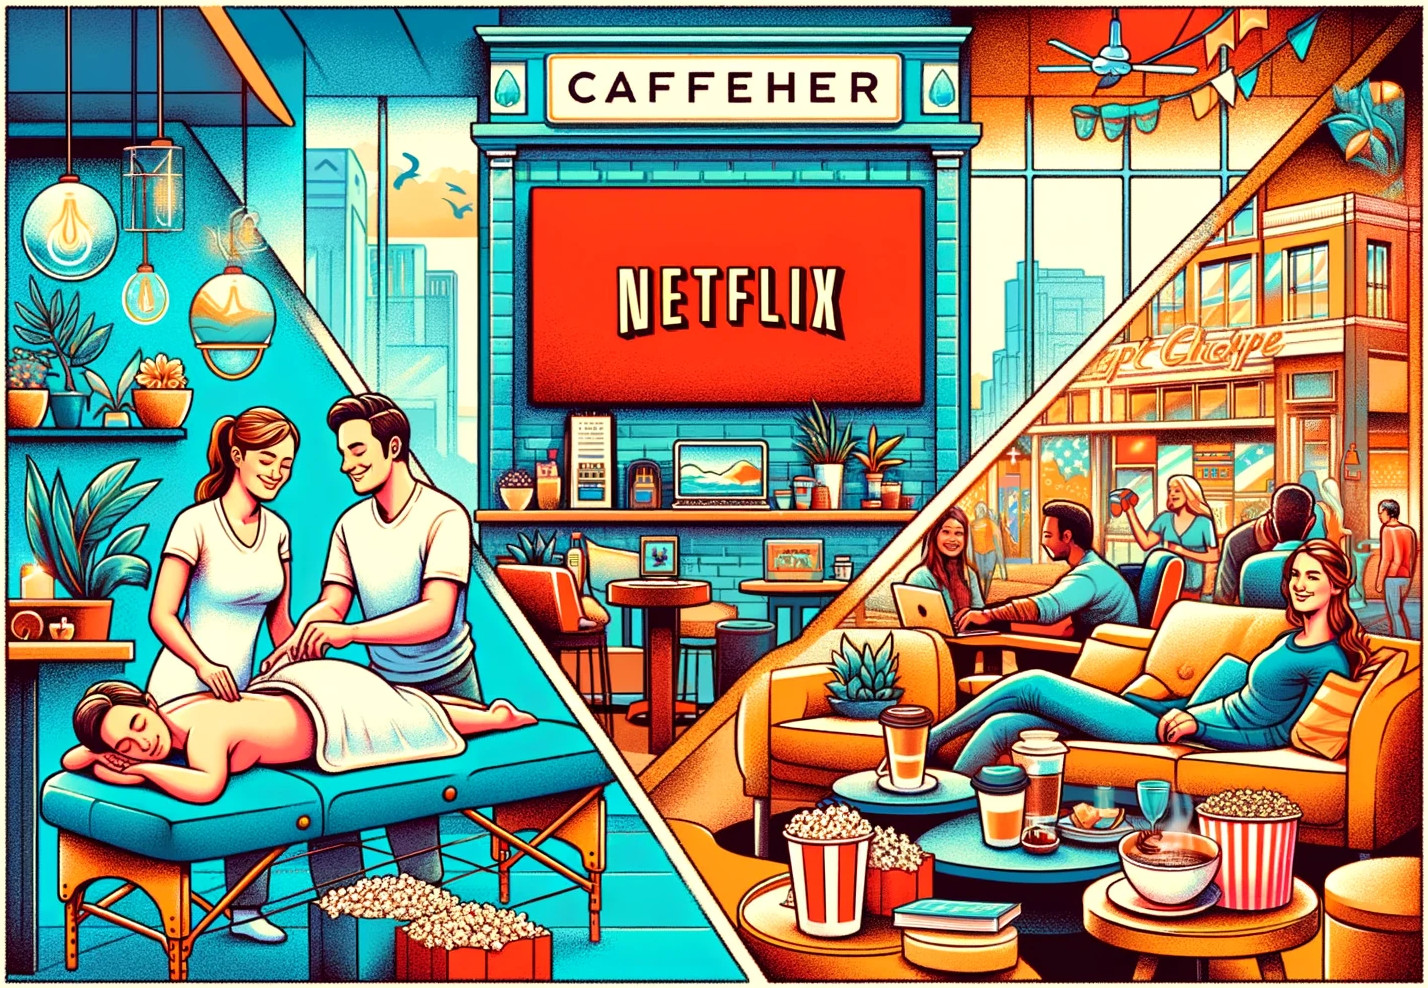 Co wspólnego mają ze sobą salon masażu, kawiarnia i Netflix?